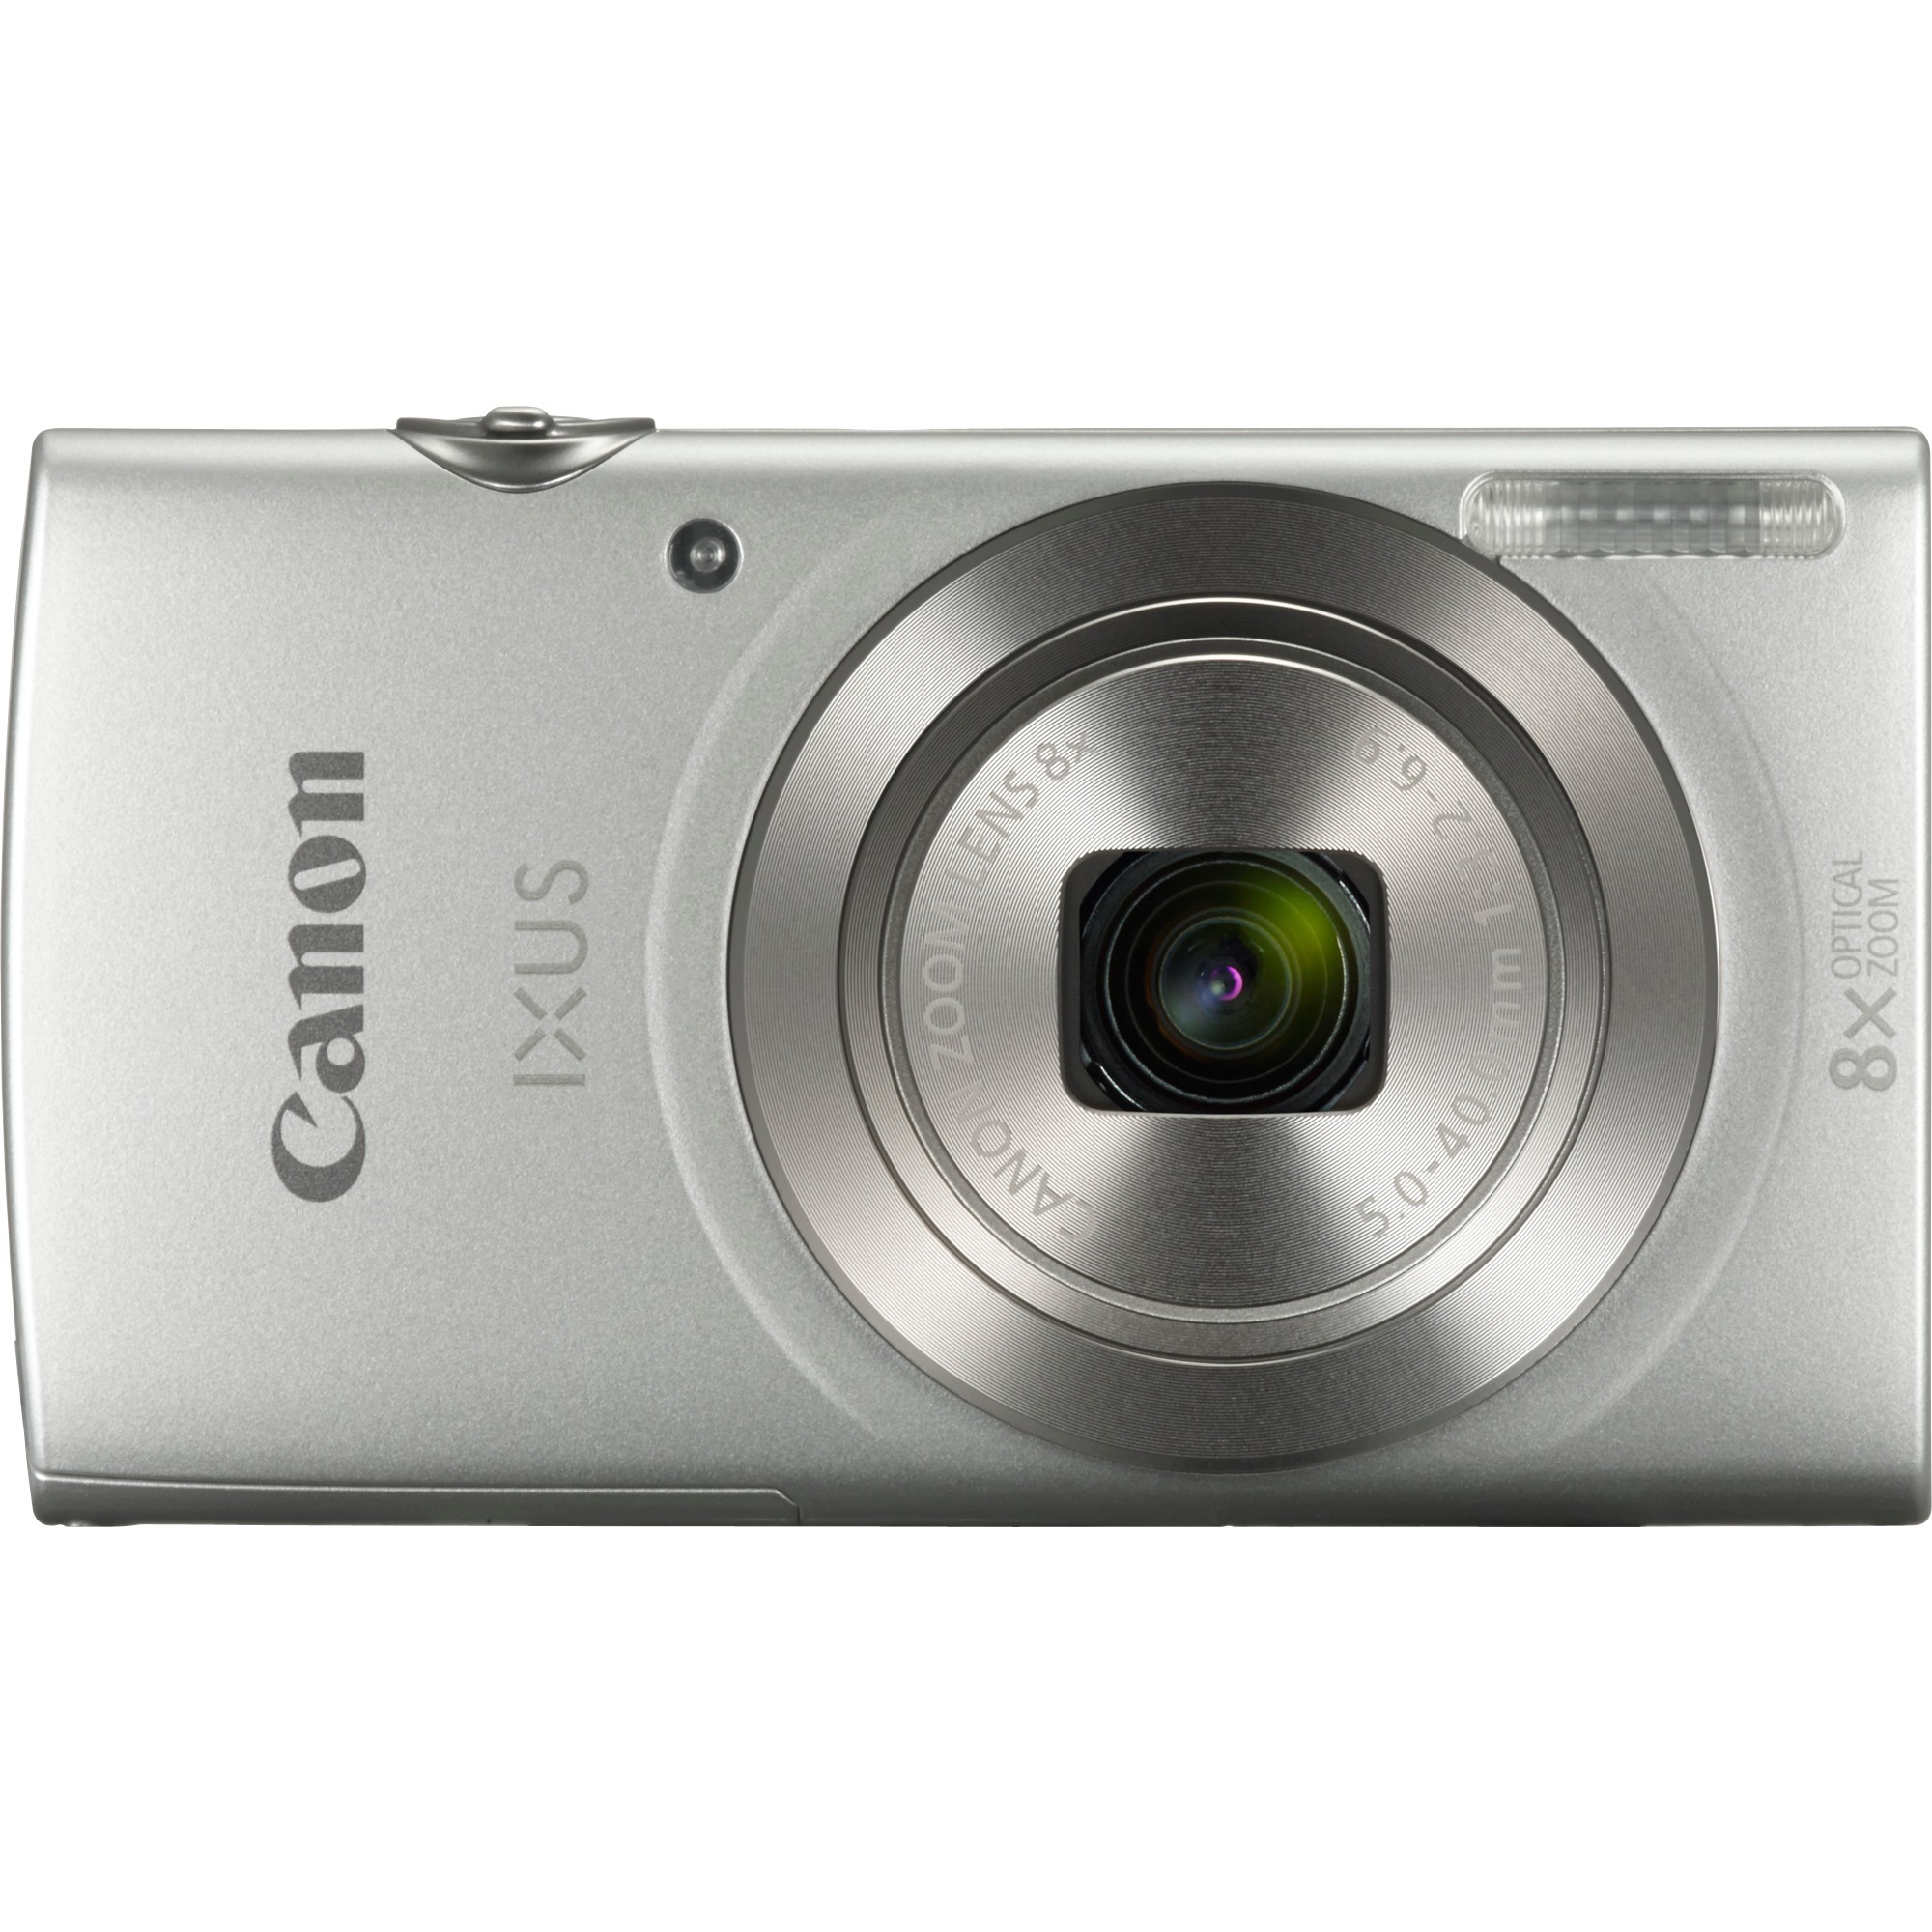 Digital IXUS 185 Kompaktowy aparat fotograficzny 20 MP 1/2.3" CCD 5152 x 3864 piksele Srebrny, Cyfrowy aparat fotograficzny